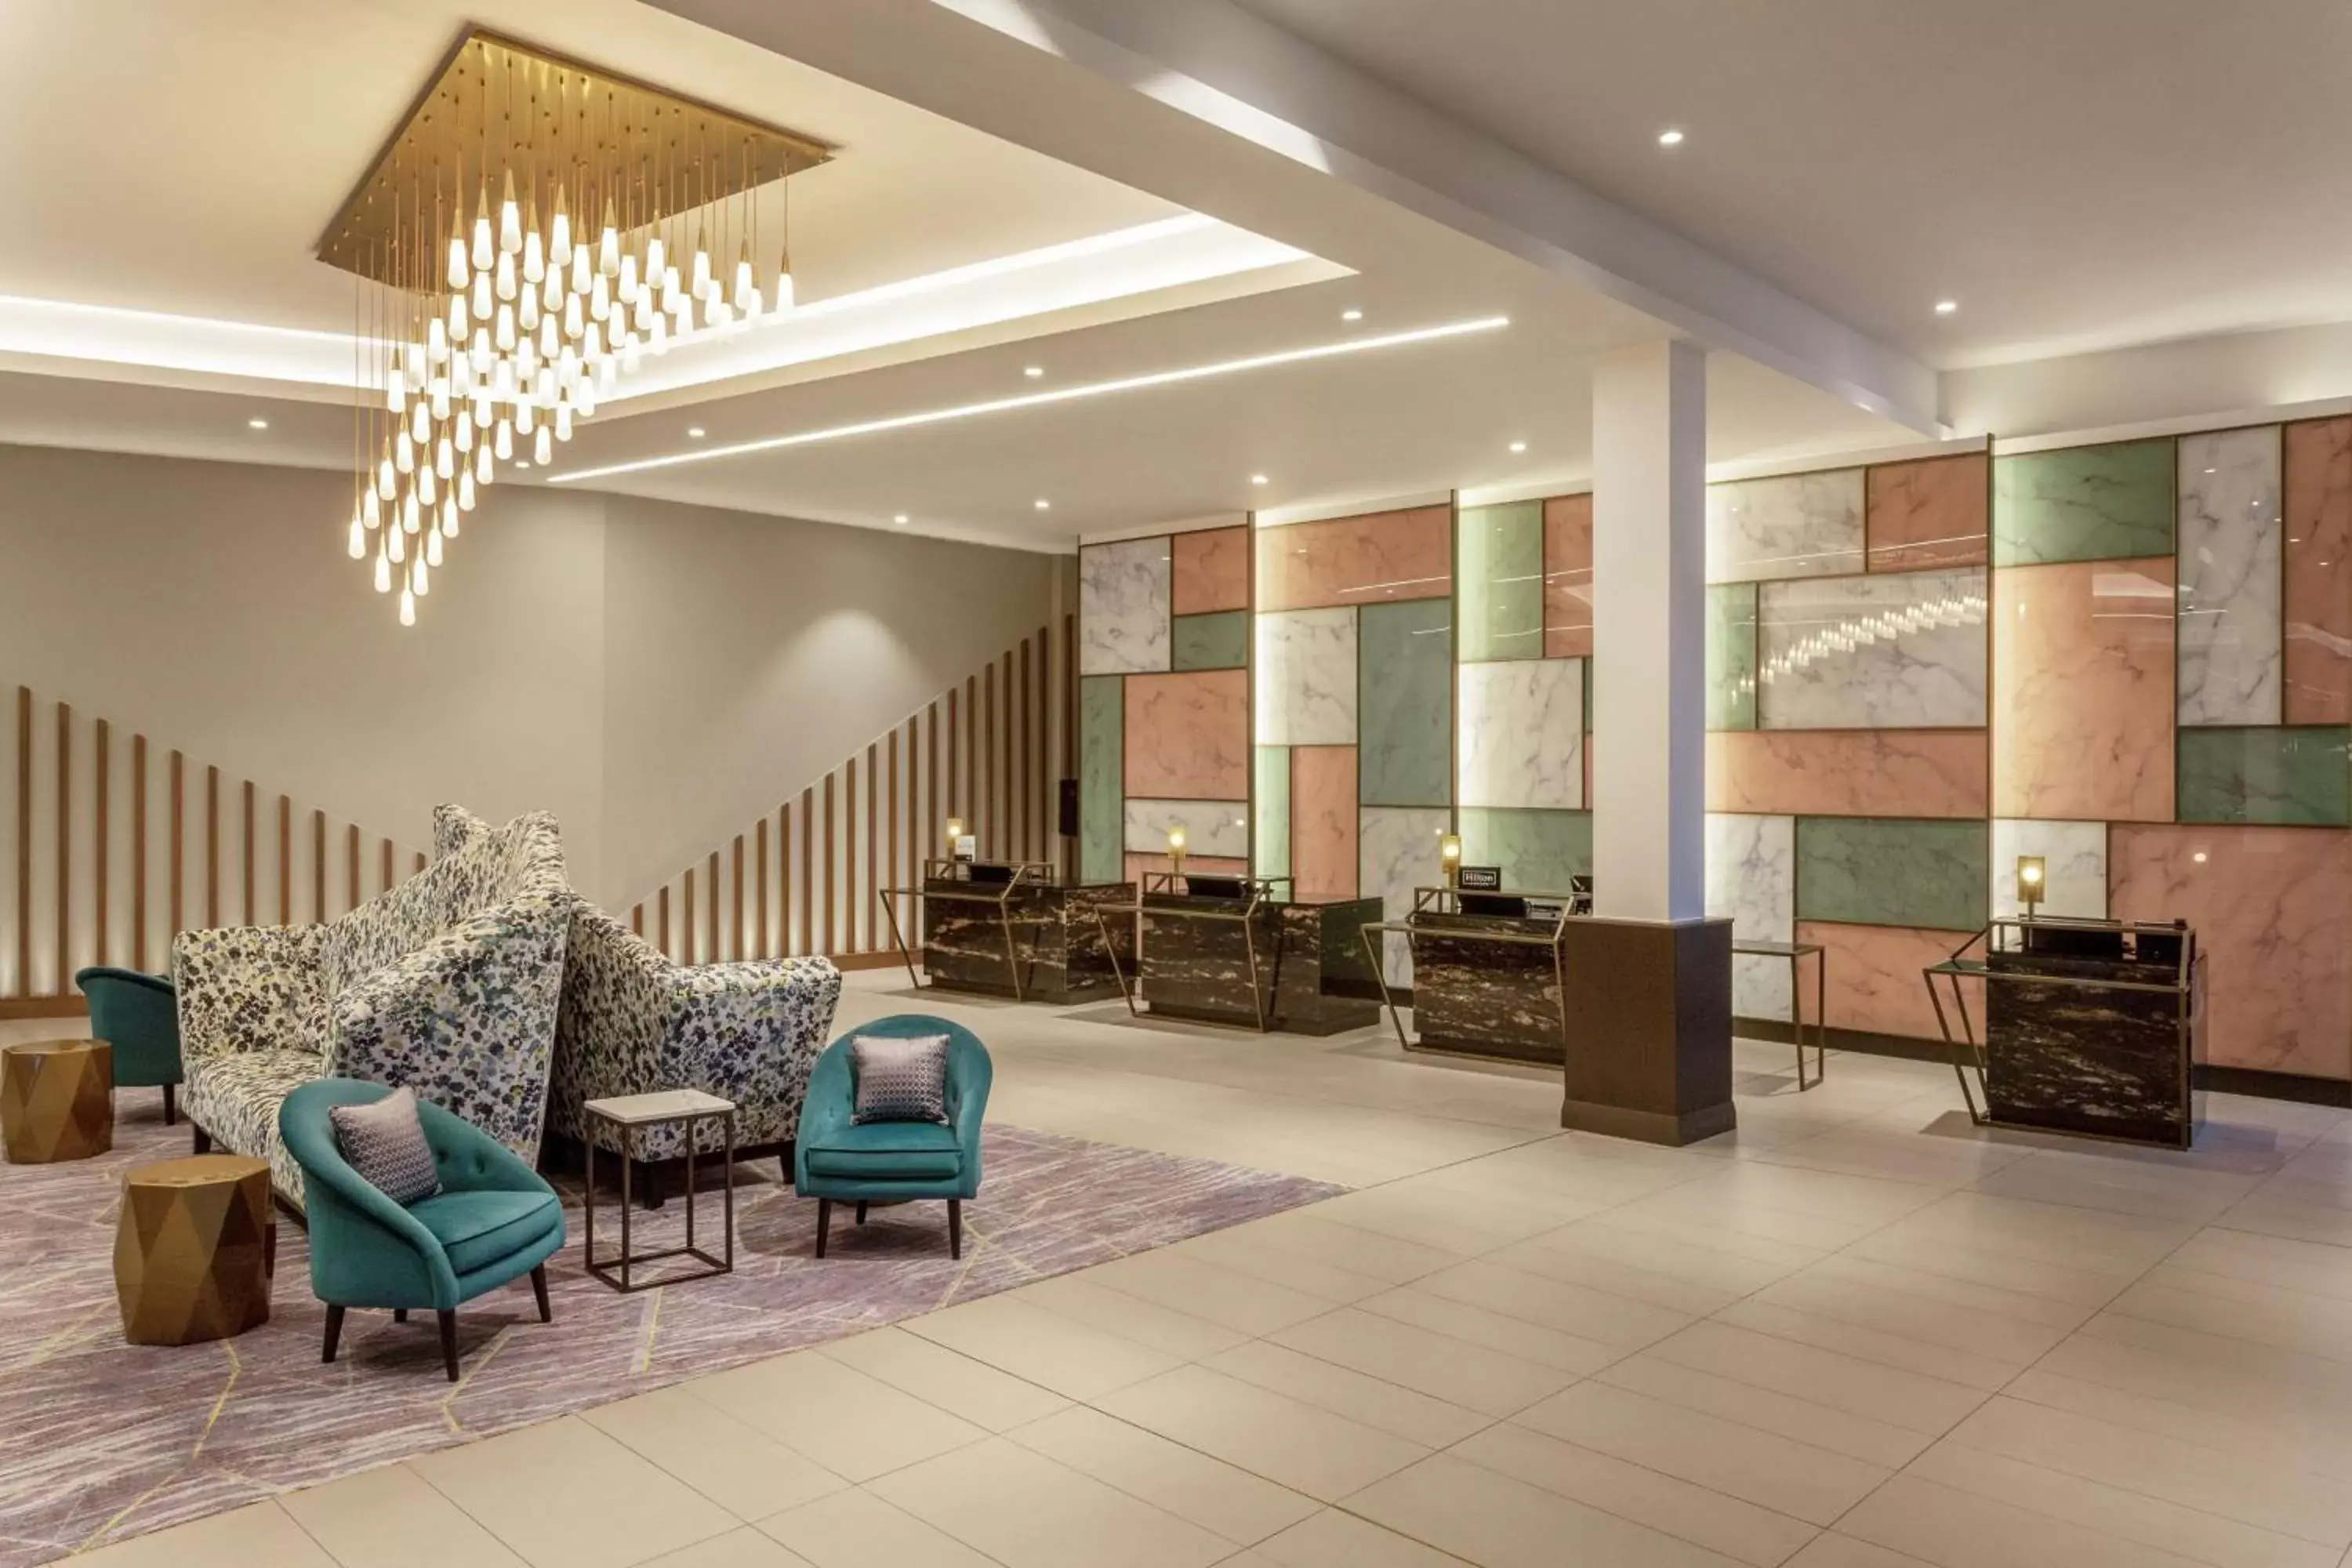 Lobby or reception, Lobby/Reception in Hilton Aberdeen TECA